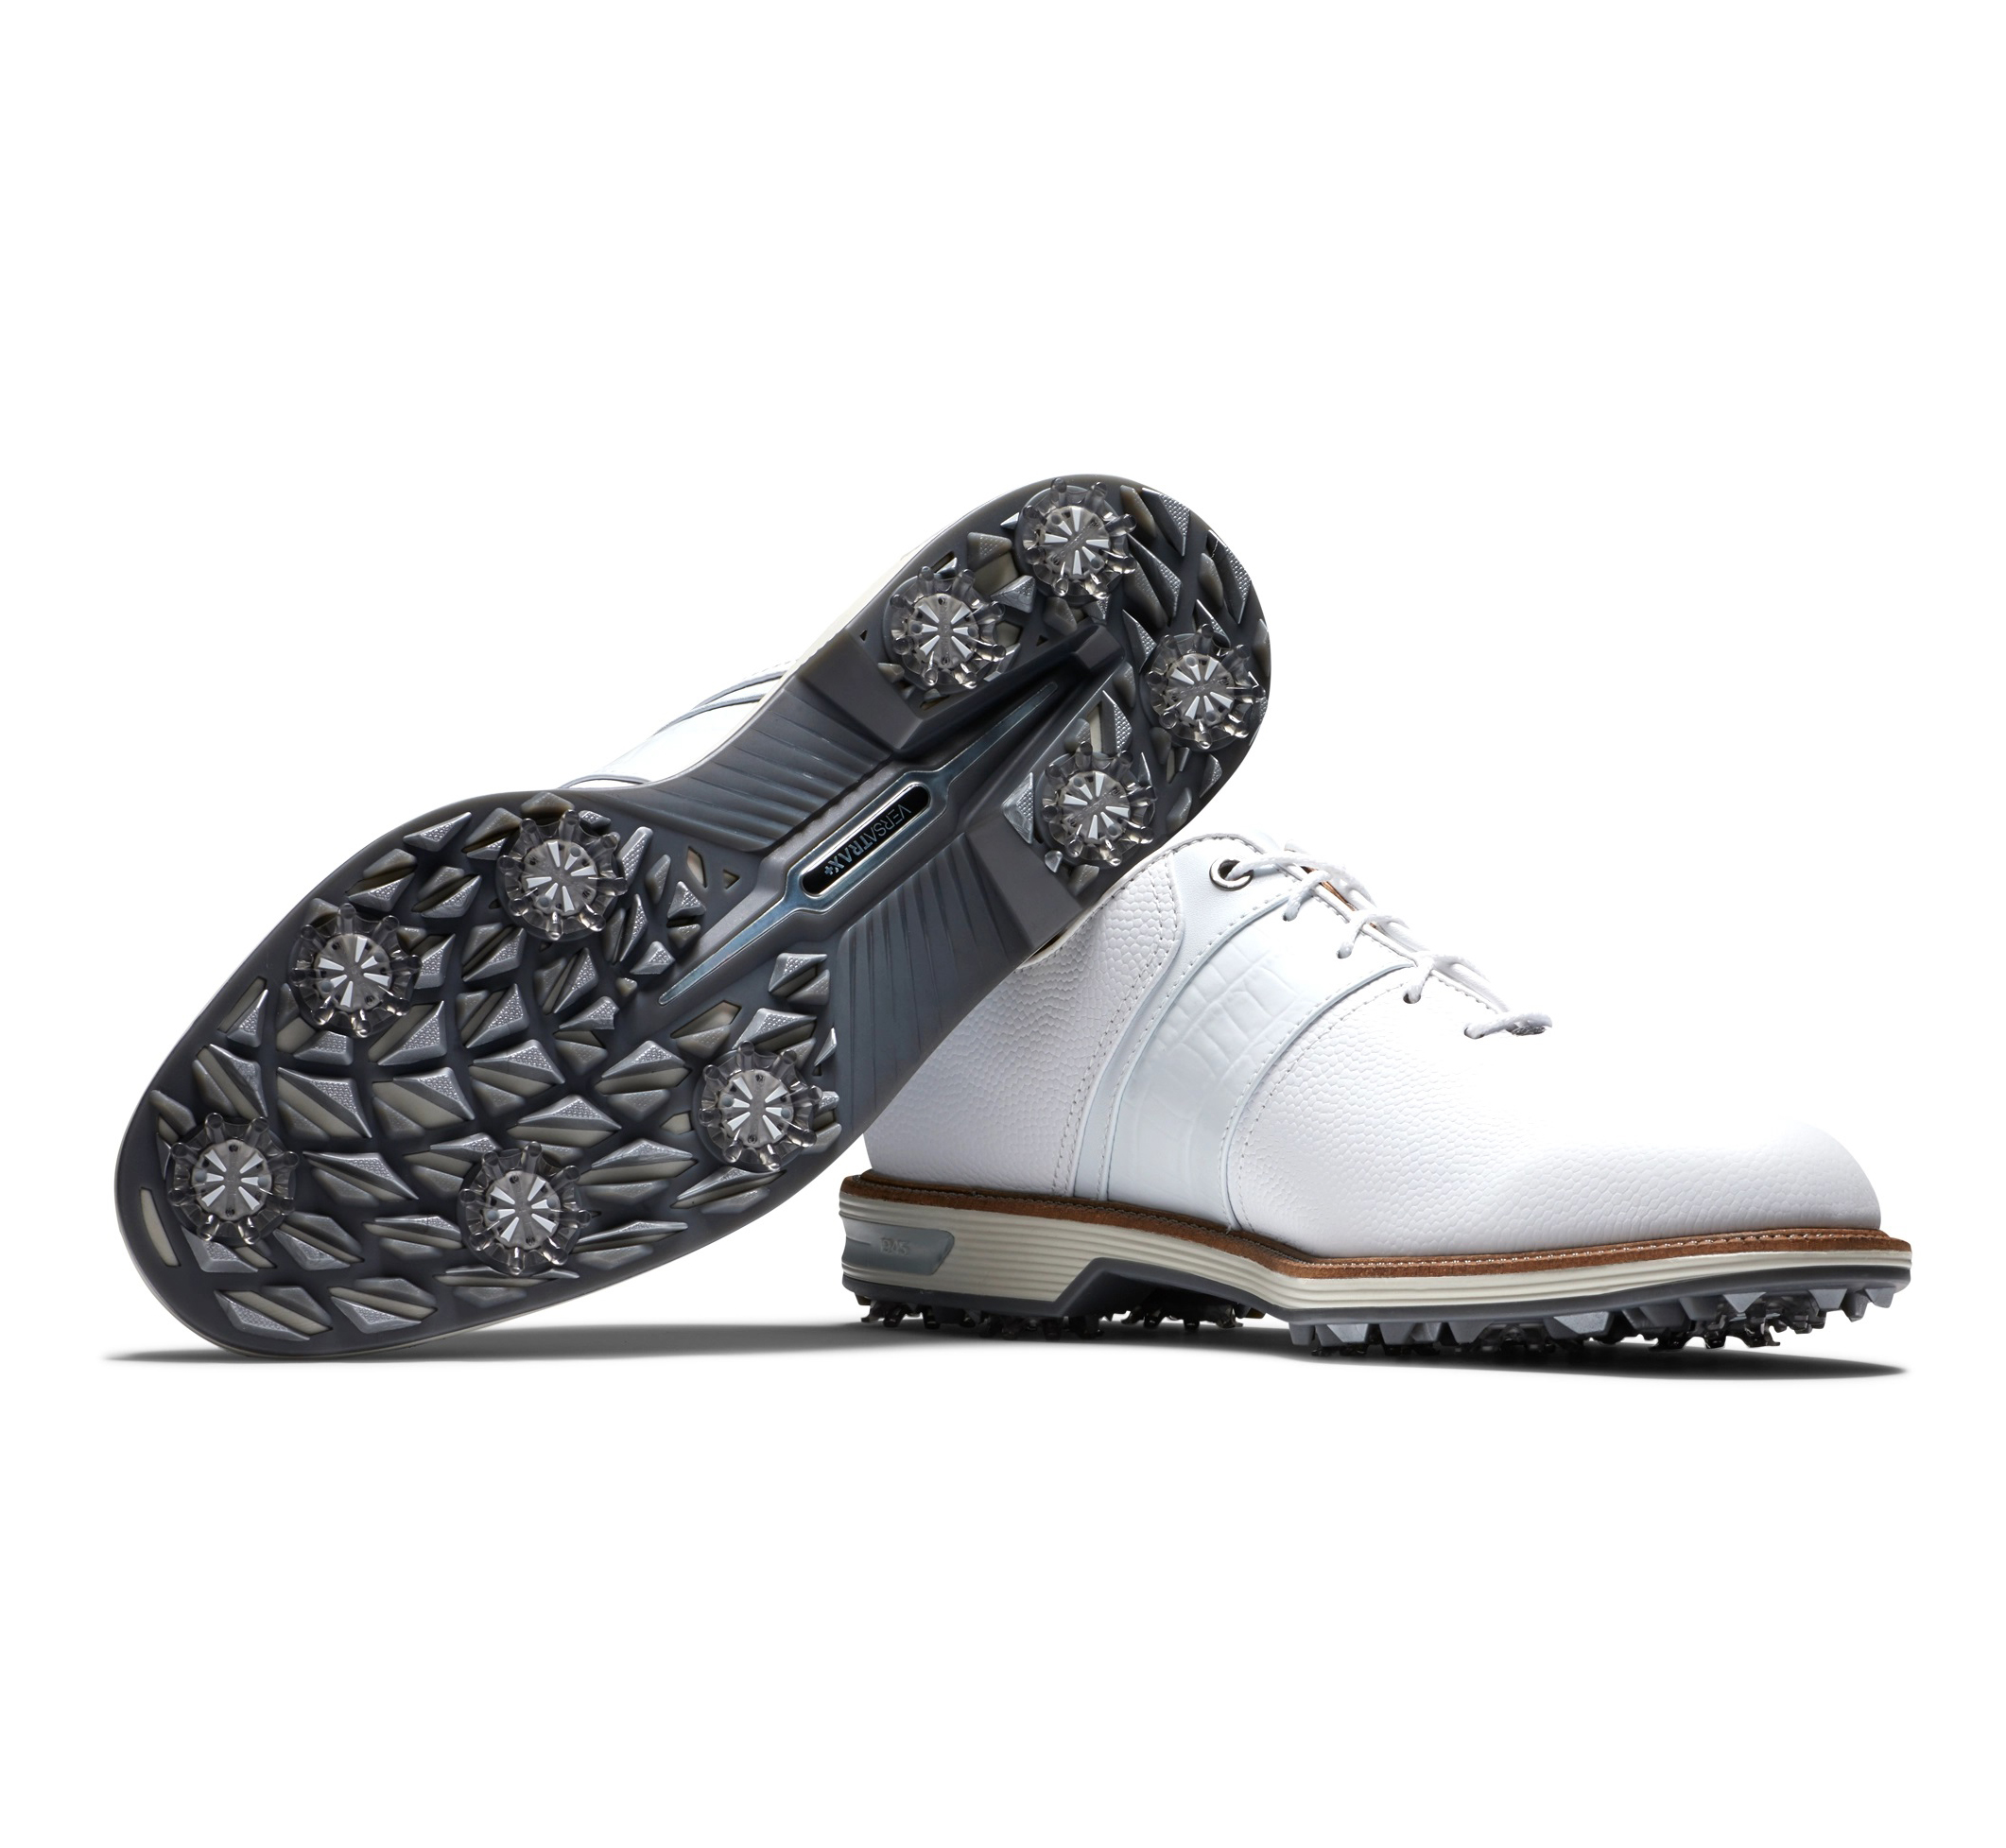 Giày FJ BS M PREMIERE ALL WHITE - 53908 - Phụ kiện không thể thiếu của các quý ông mê Golf